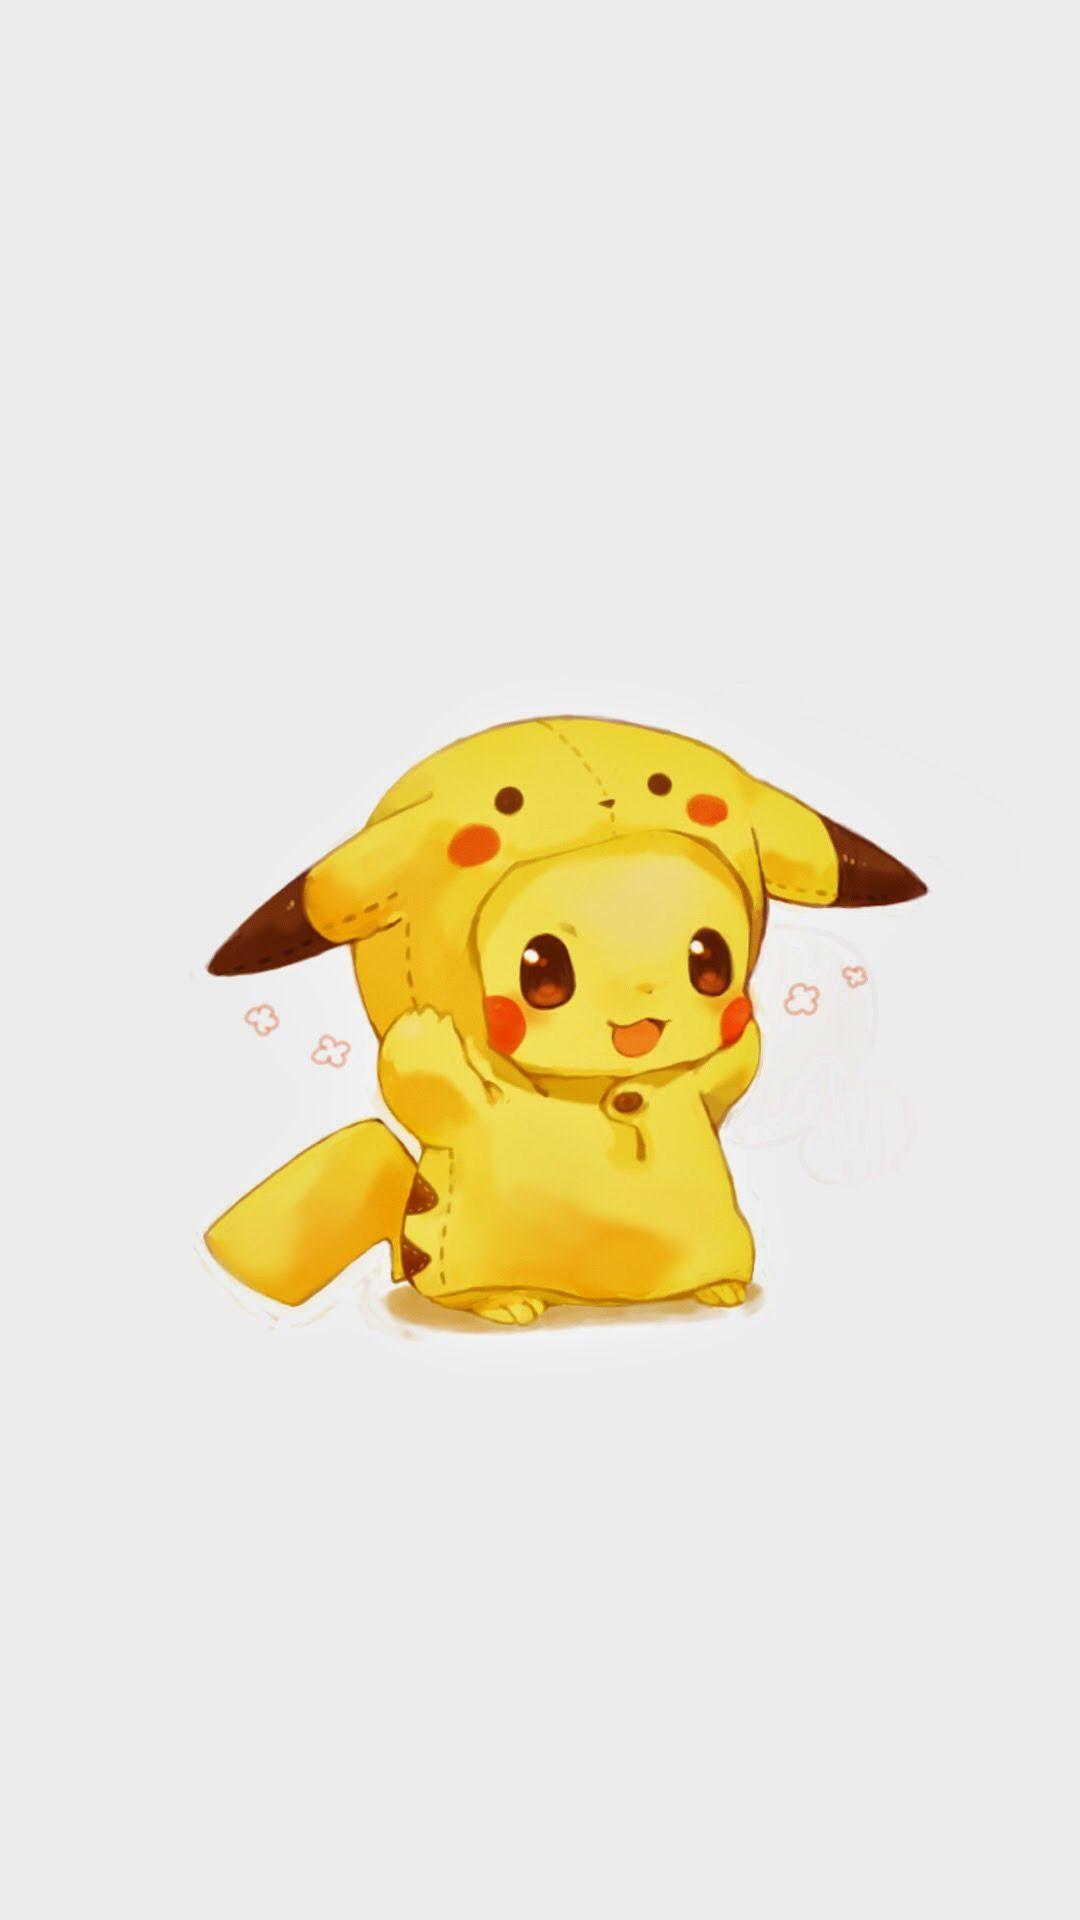 Làm mới điện thoại của bạn với hình nền Pikachu đáng yêu miễn phí. Với nụ cười thân thiện và khuôn mặt đáng yêu của chú chuột điện, bạn sẽ cảm thấy hạnh phúc mỗi khi nhìn vào điện thoại của mình.